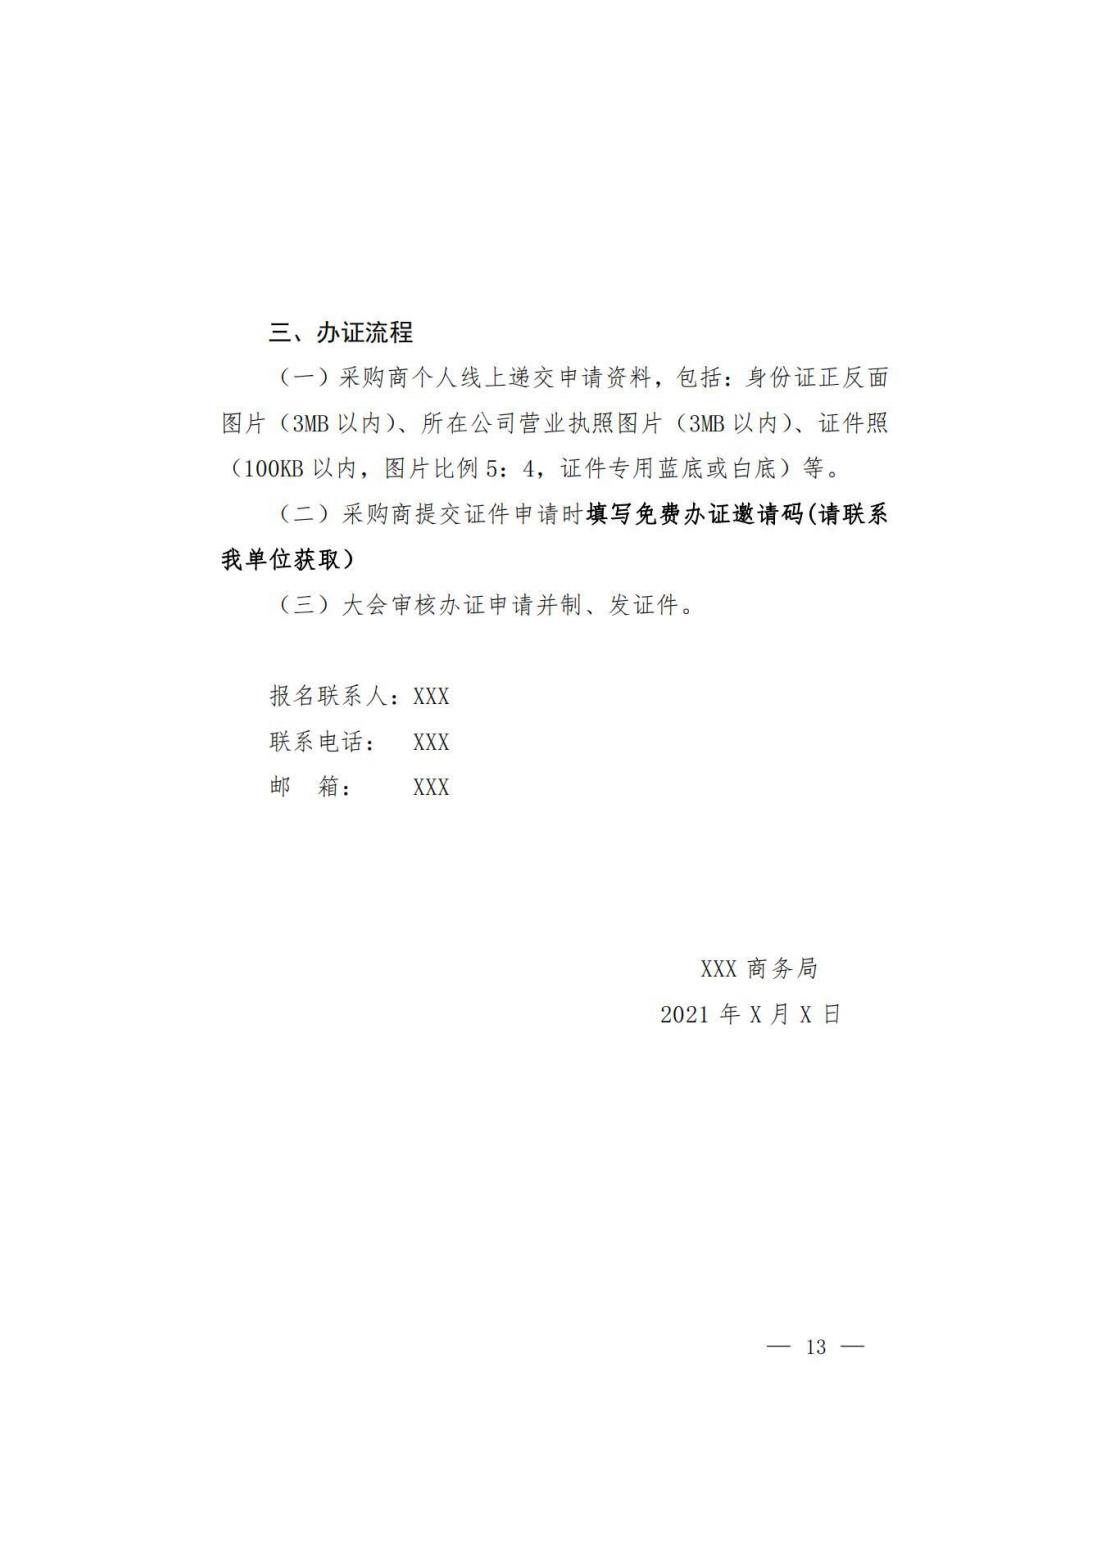 关于转发商务厅《第 130 届中国进出口商品交易会山西省交易团采购商组织实施方案》的通知(图14)